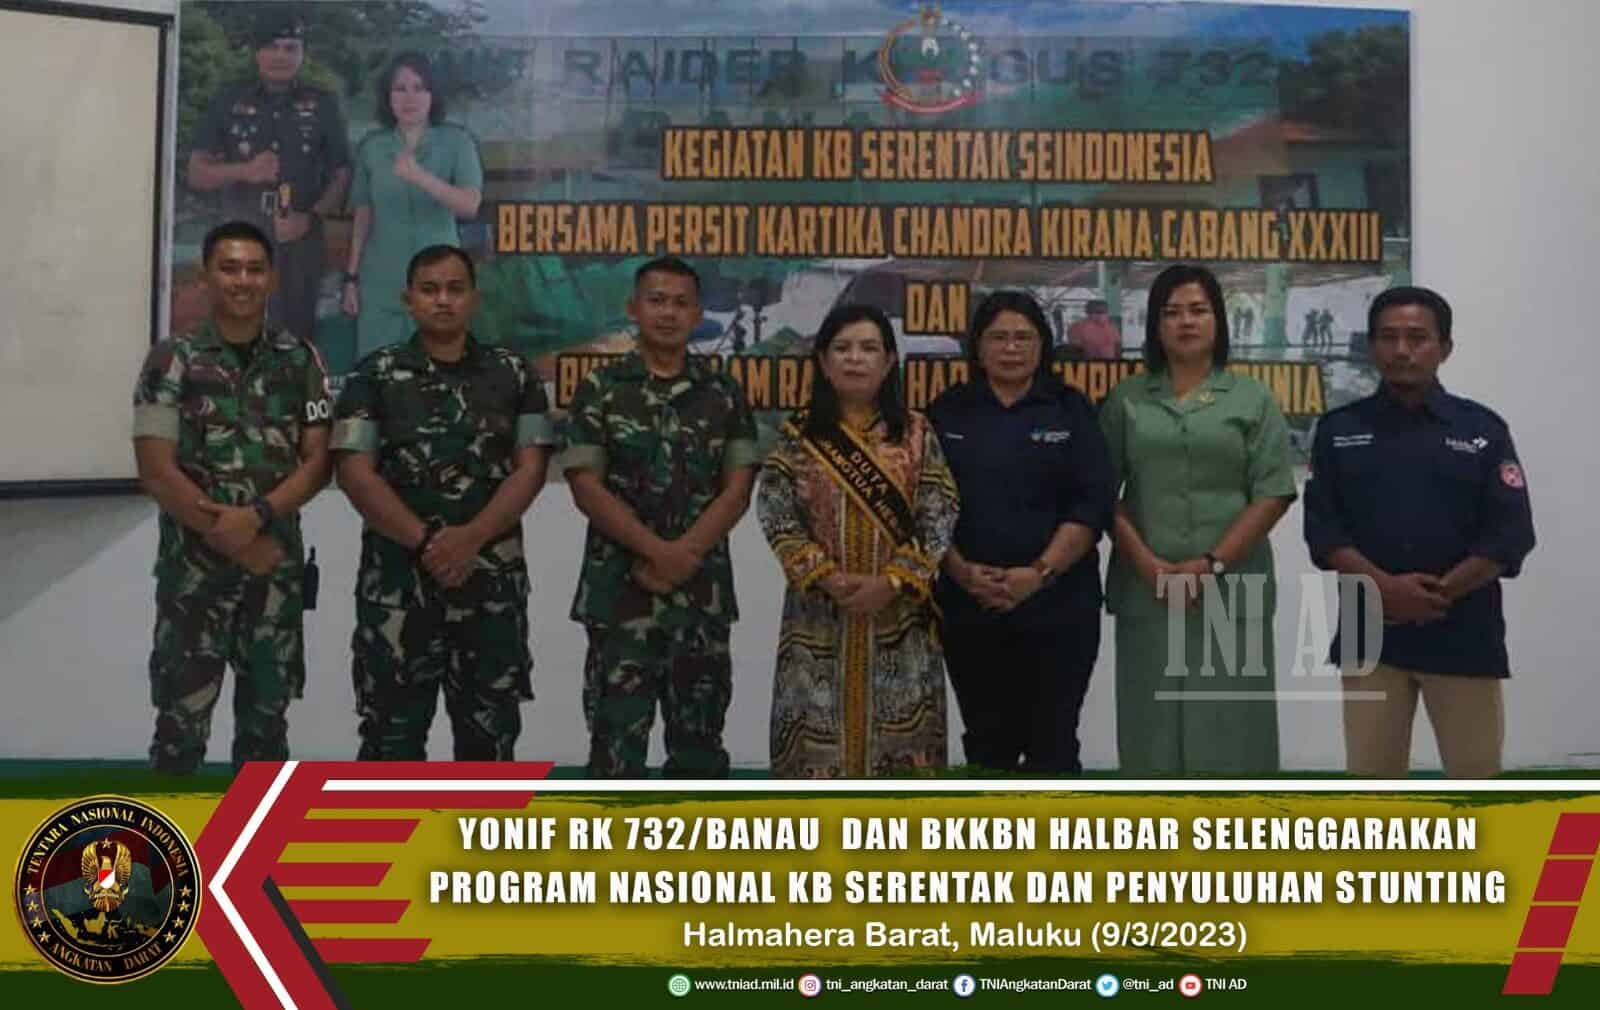 Yonif RK 732/Banau dan BKKBN Halbar Selenggarakan Program Nasional KB Serentak dan Penyuluhan Stunting